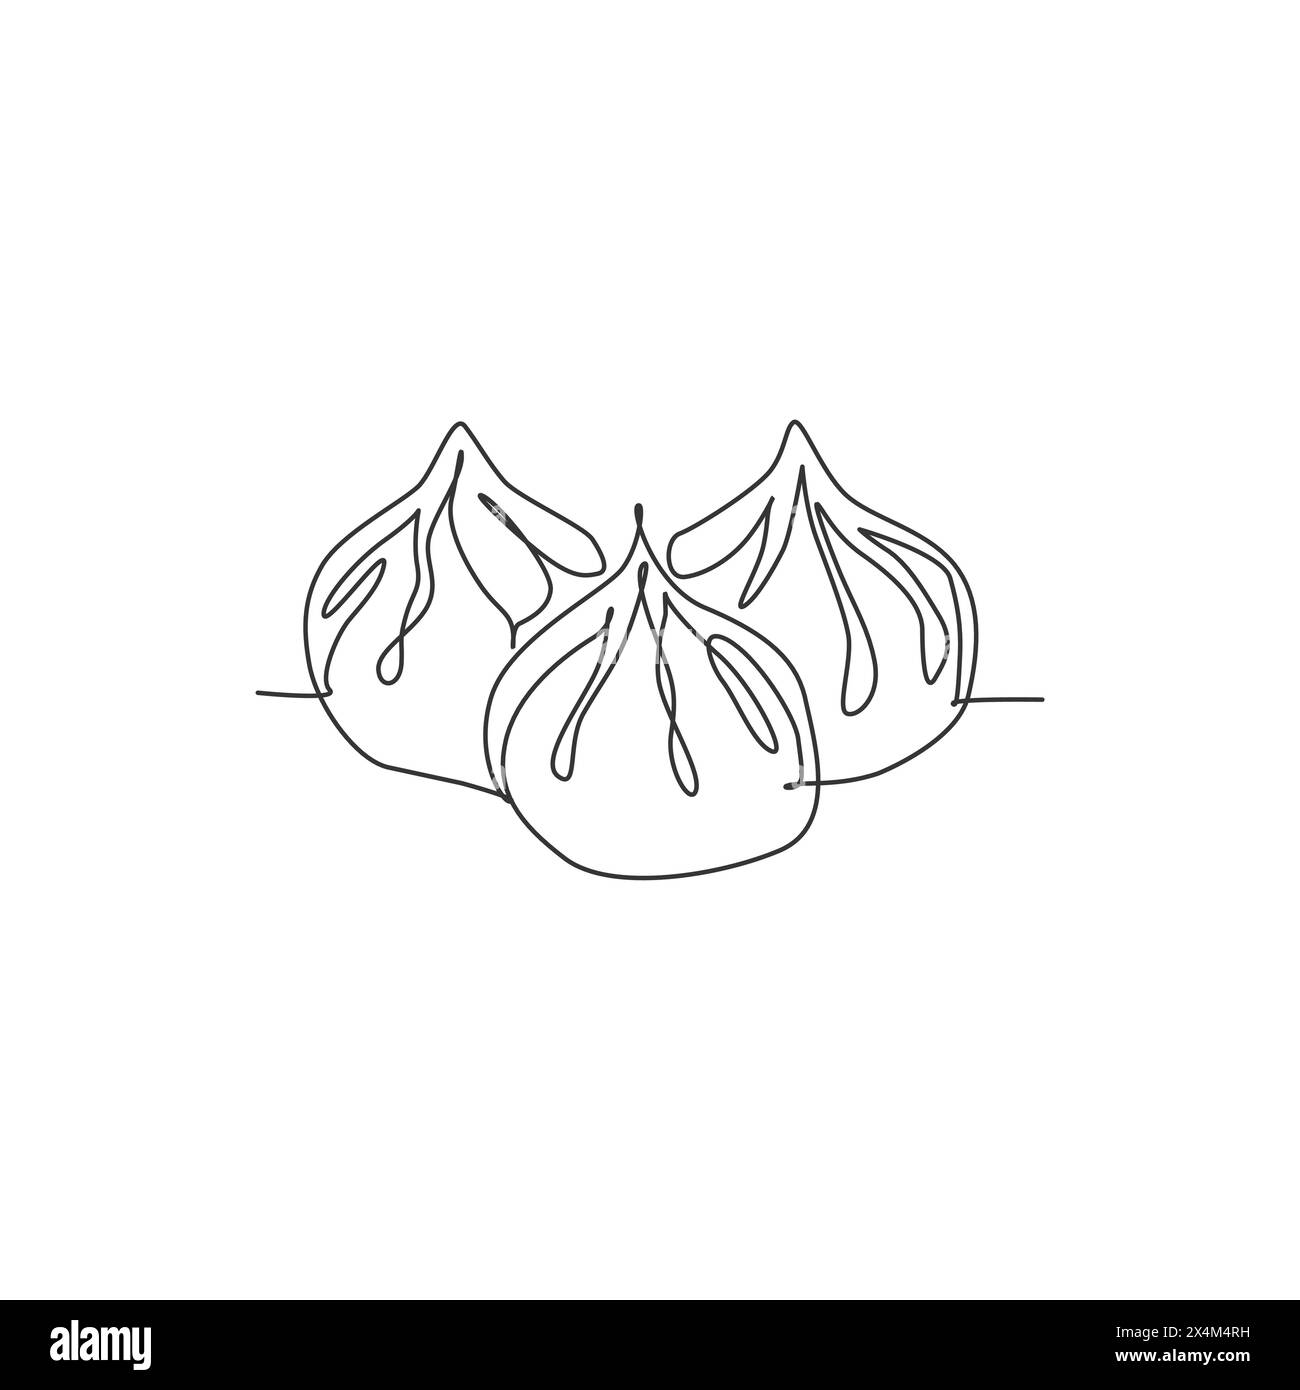 Einzelne durchgehende Linienzeichnung mit stilisiertem Logo für chinesische Knödel. Asiatisches Mantou-Restaurant-Grafikkonzept. Moderne einzeilige Zeichnung Design Vektor il Stock Vektor